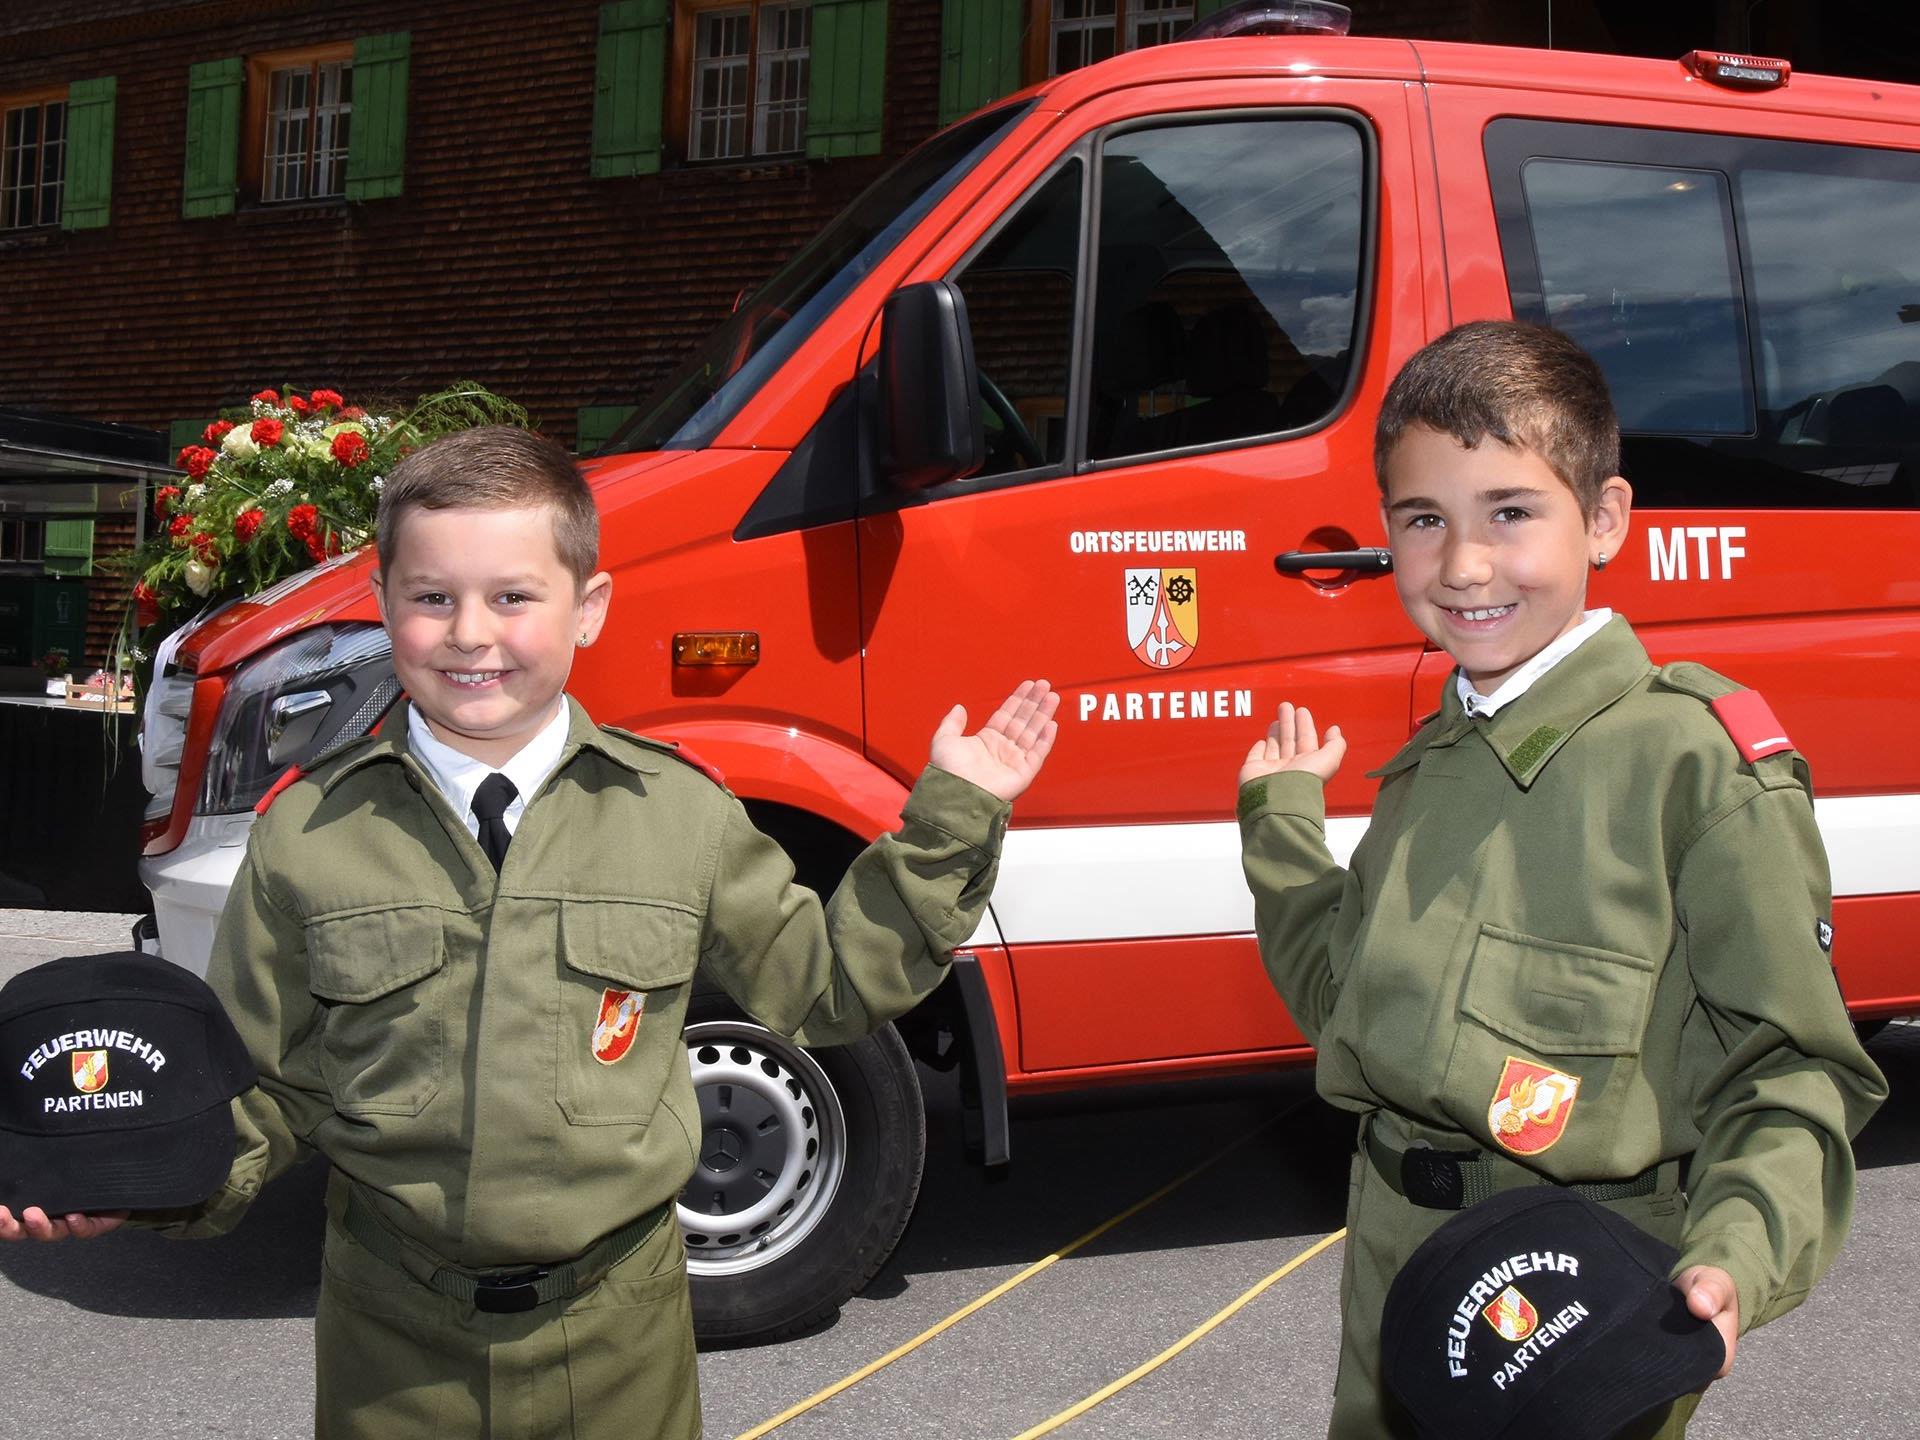 Über die Segnung des neuen Mannschaftstransportfahrzeuges freuten sich auch diese beiden Mitglieder der Partener Feuerwehrjugend.